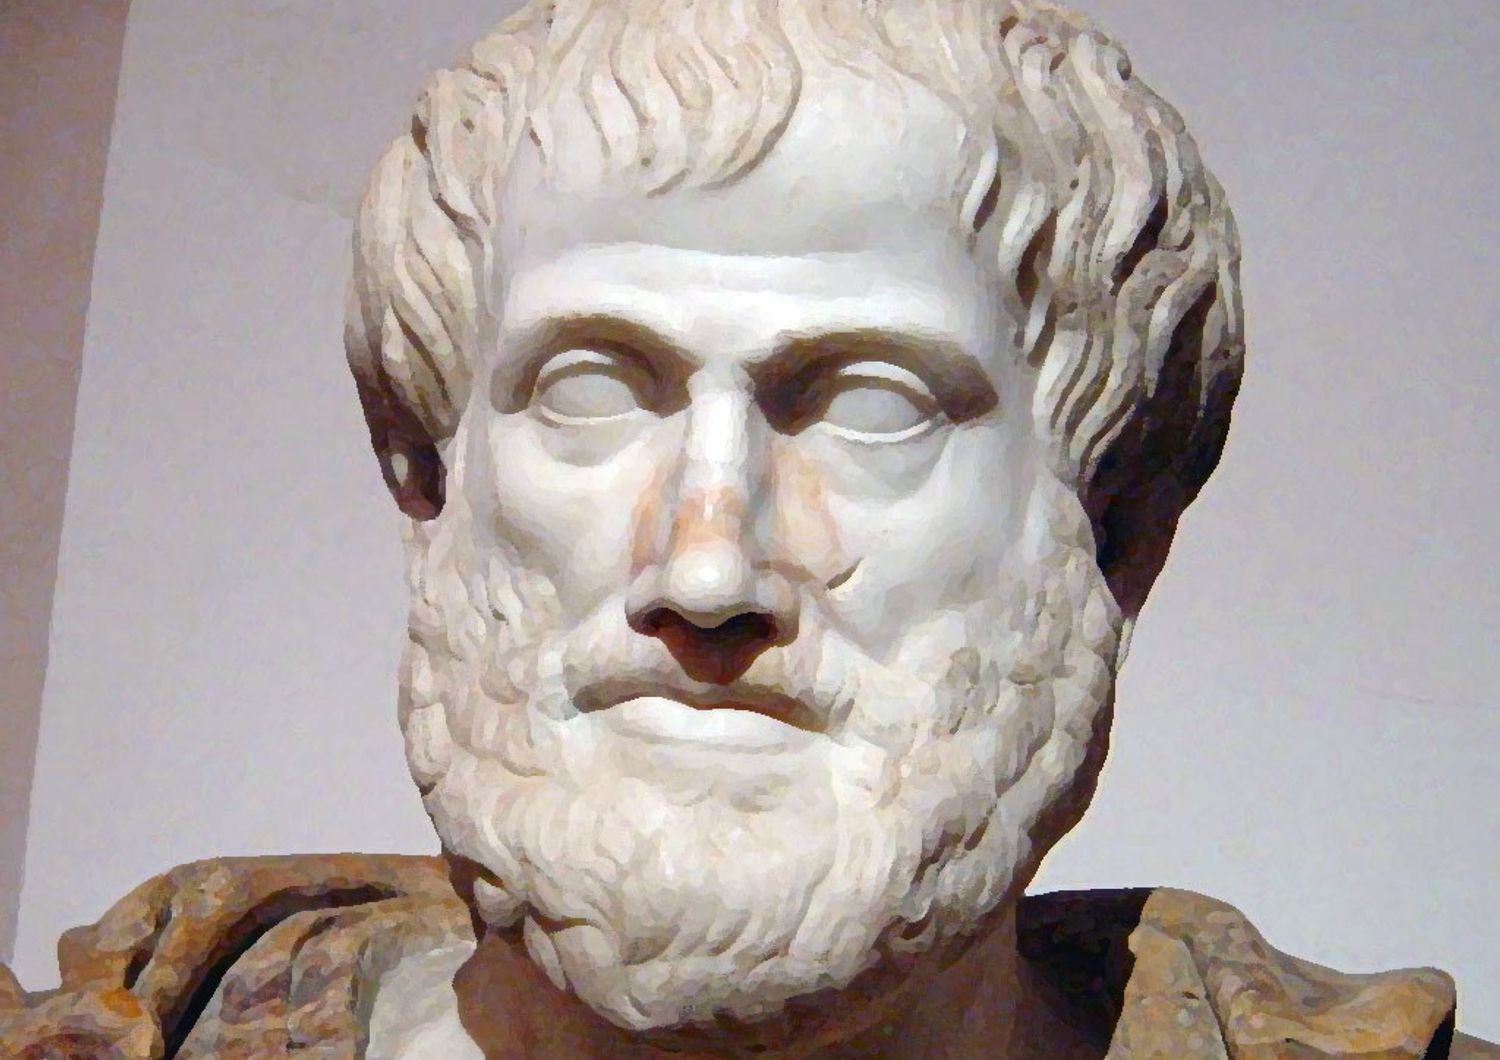 Maturit&agrave;: Aristotele al classico, macchina per pavimenti allo scientifico